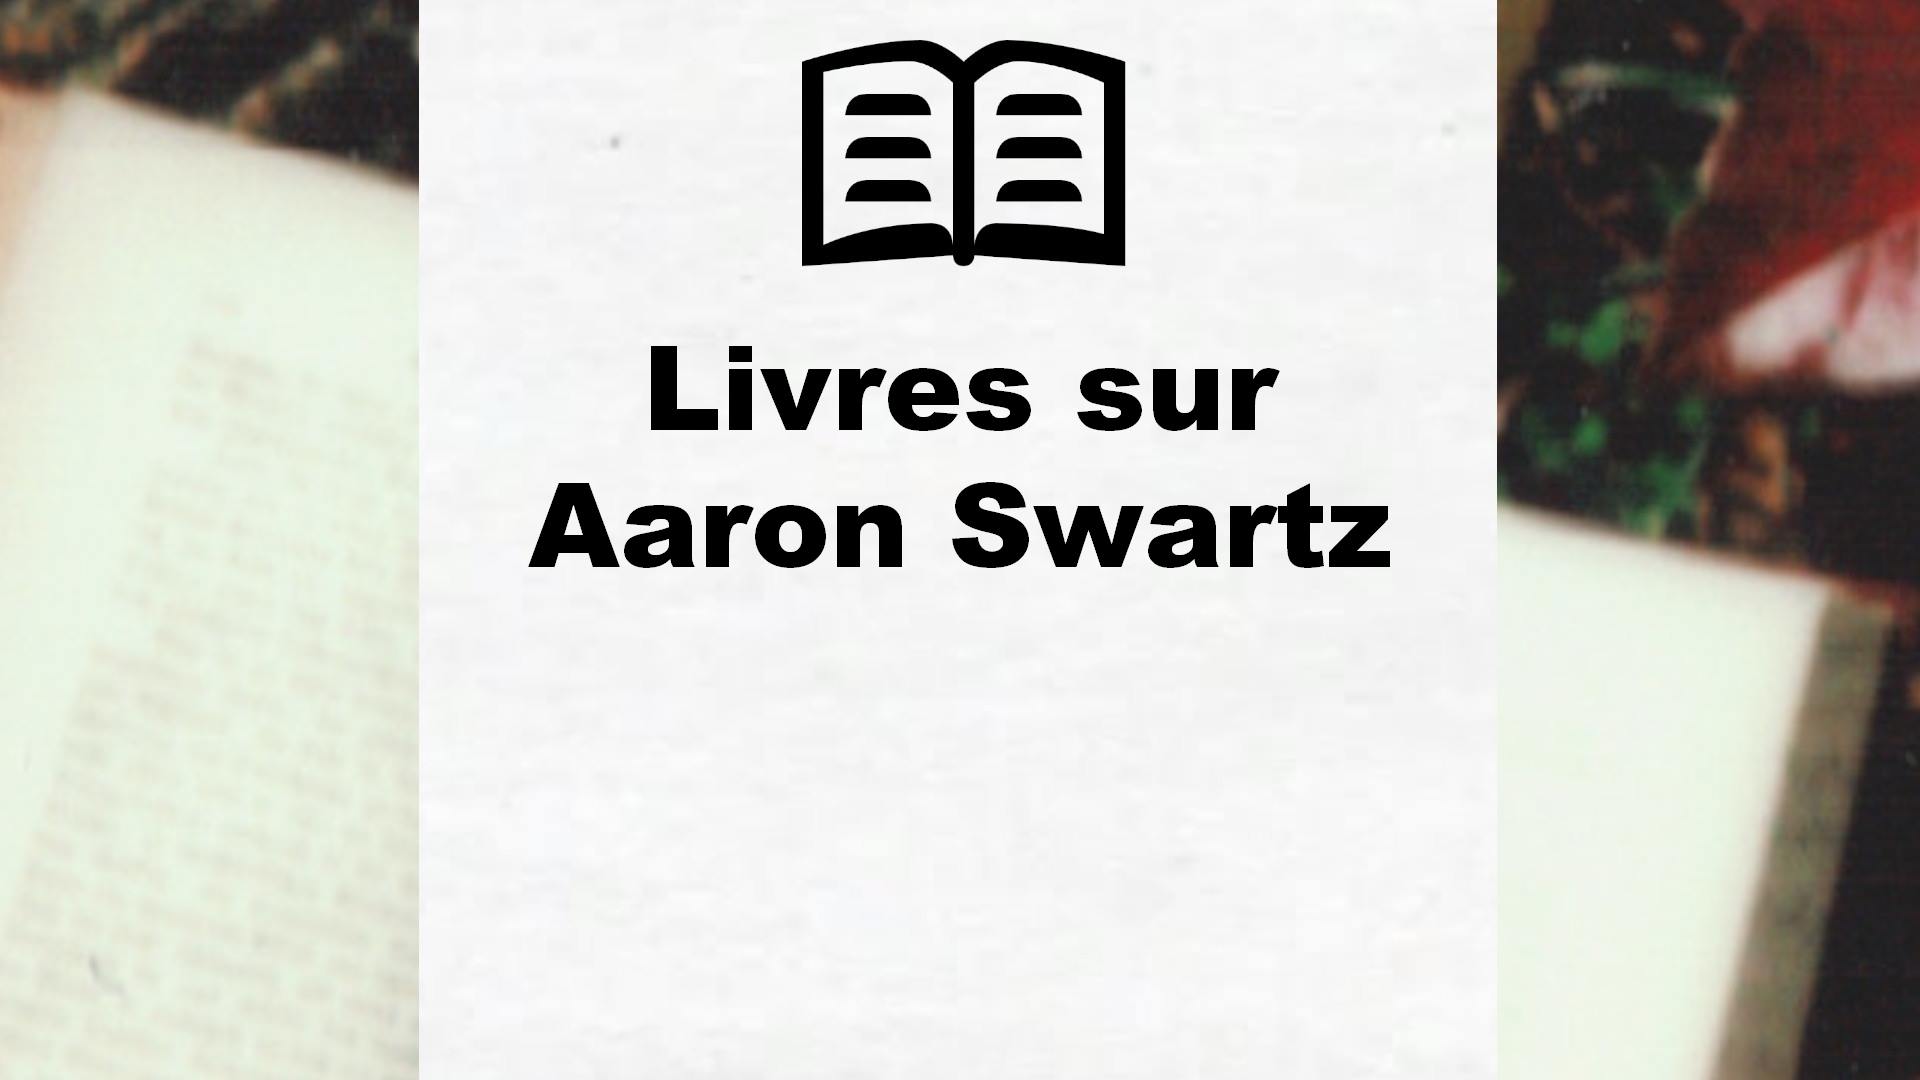 Livres sur Aaron Swartz